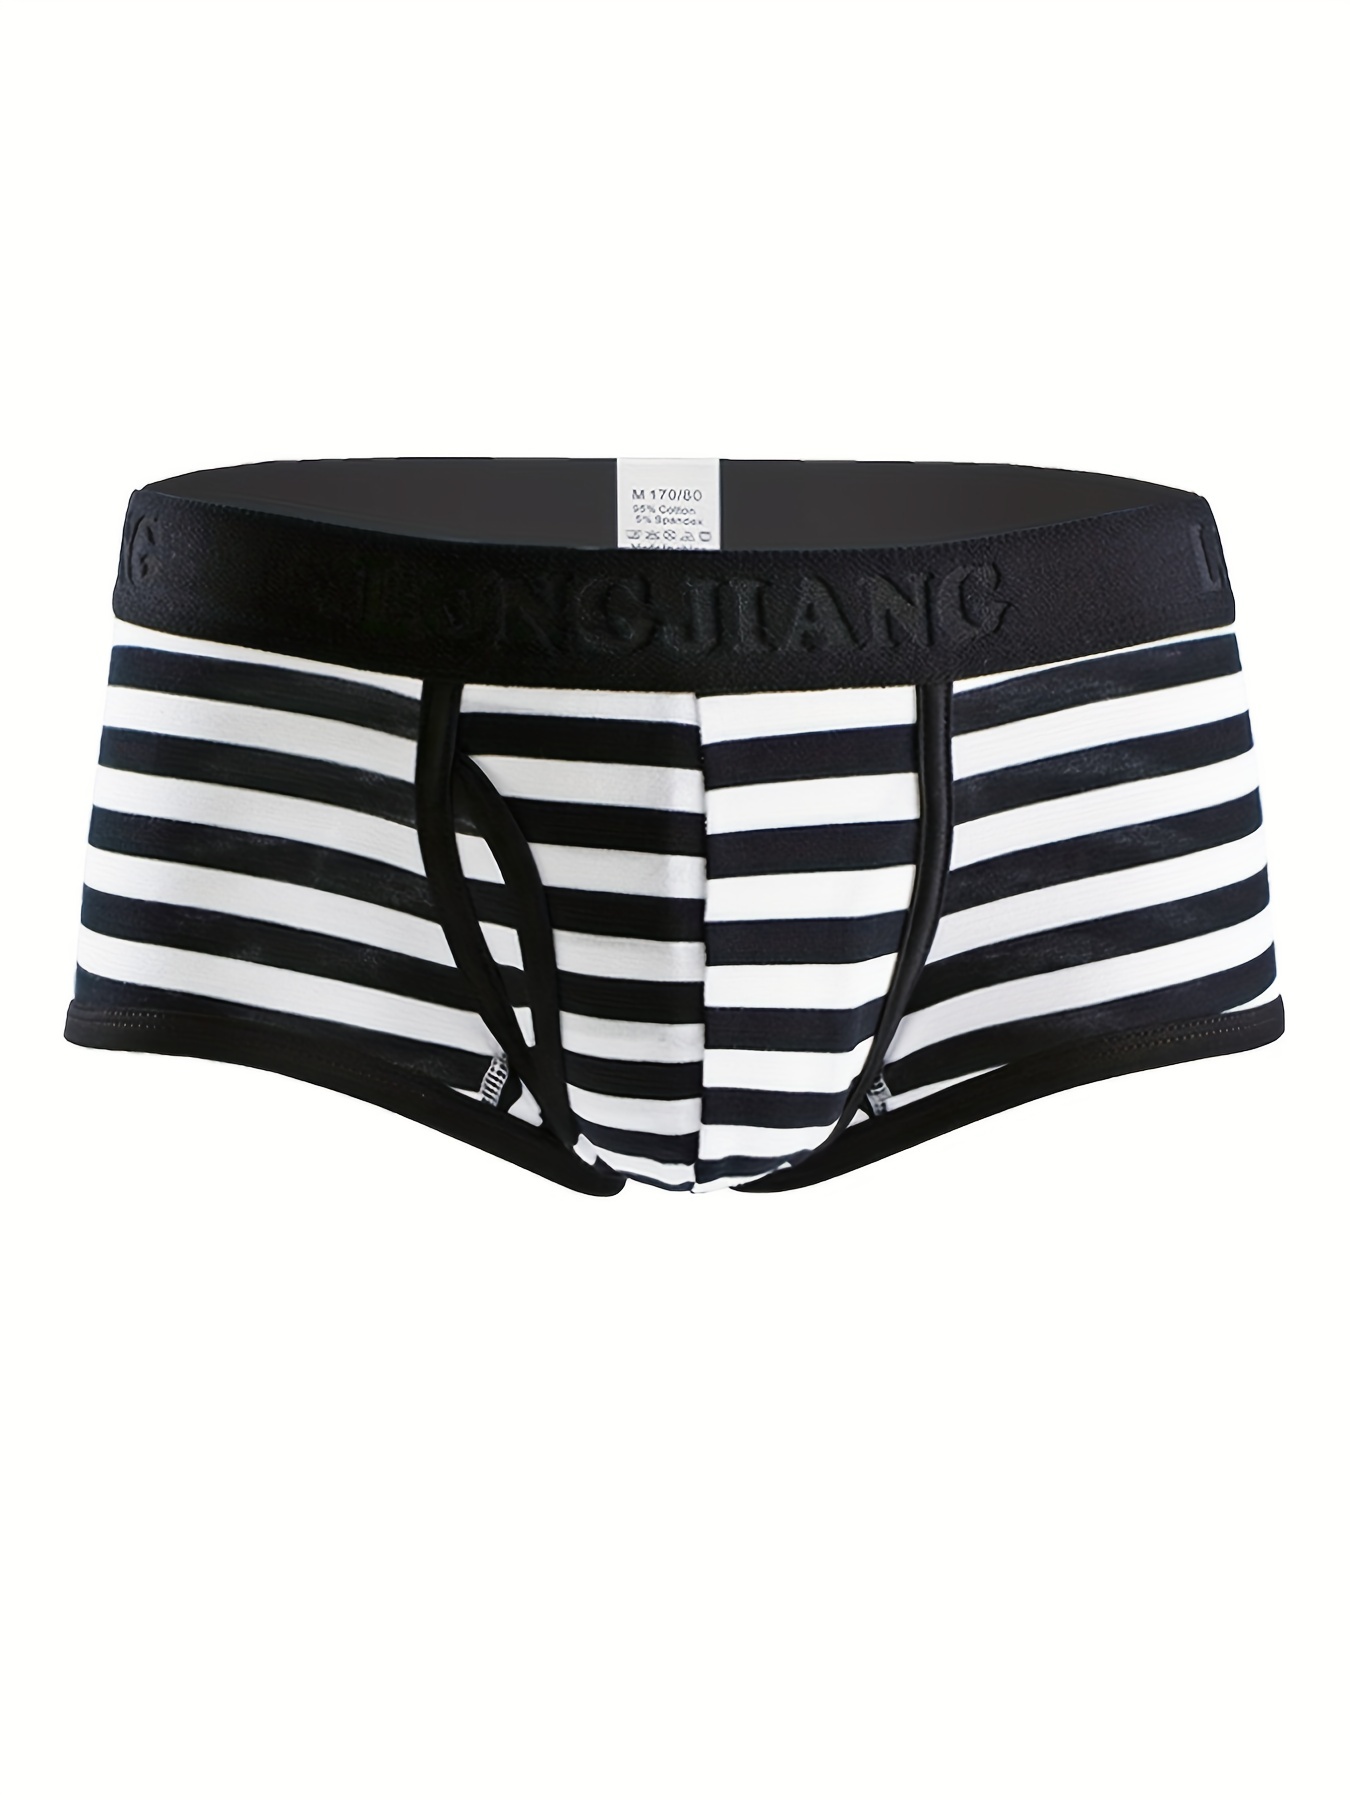 Stripe Men's Briefs - Black & White I Men's Designer Underwear